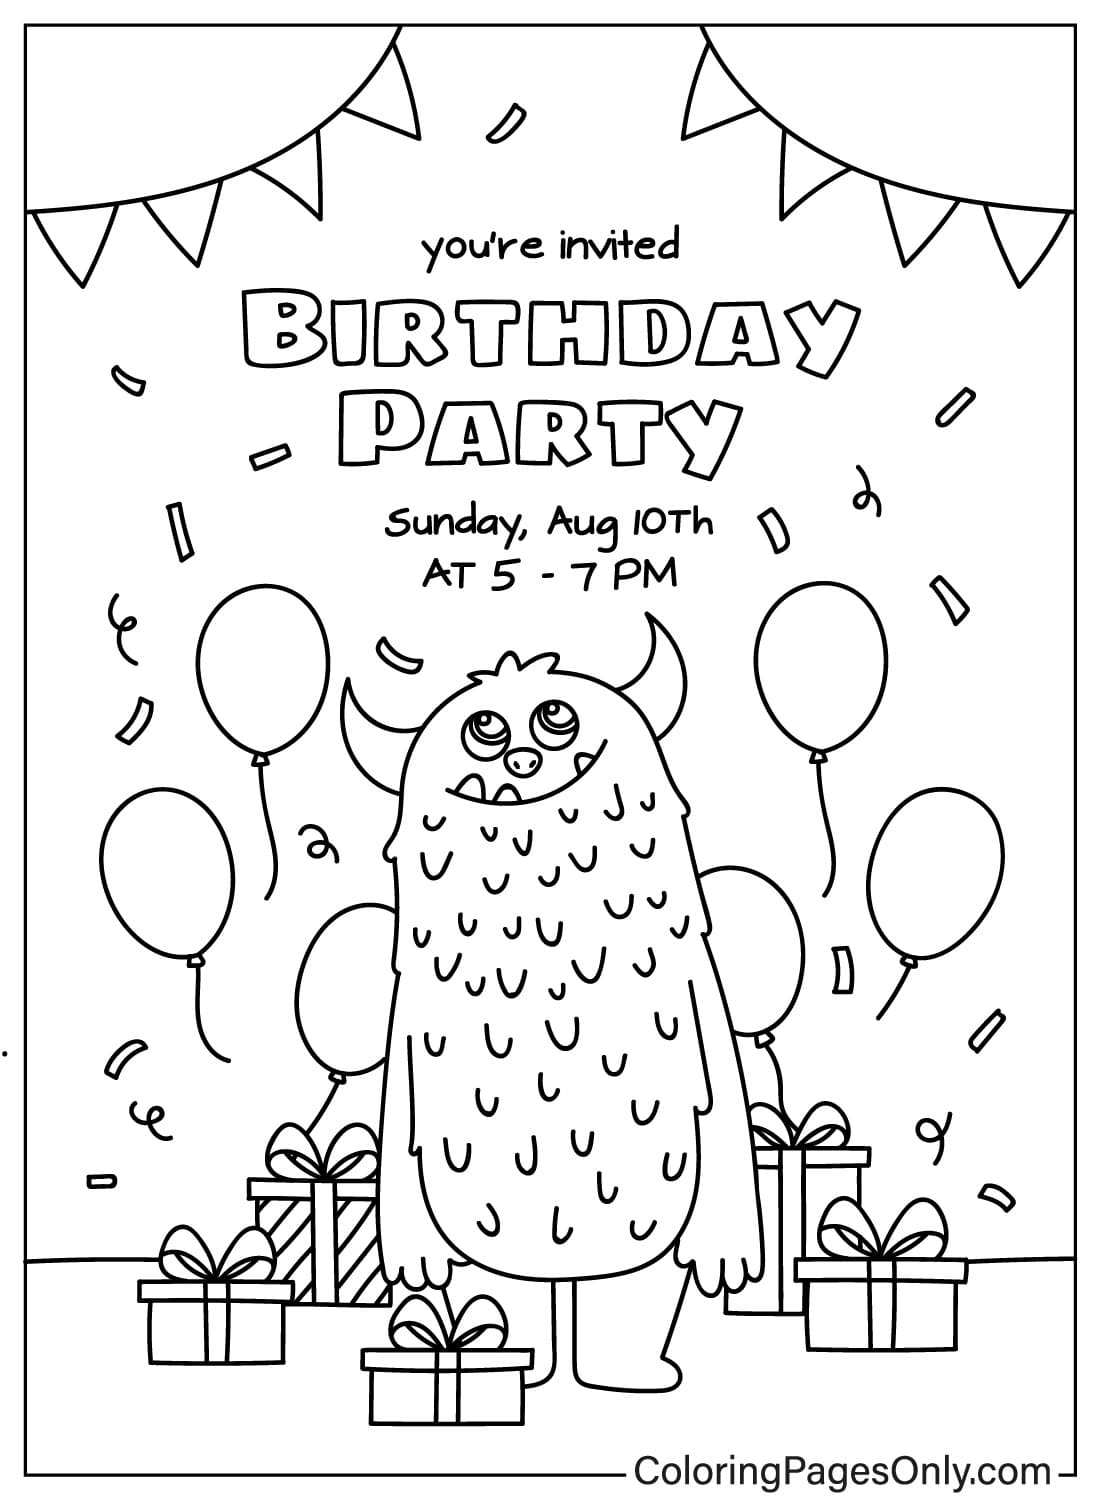 Картинка с поздравительной открыткой на день рождения, которую можно раскрасить из открытки с днем ​​рождения